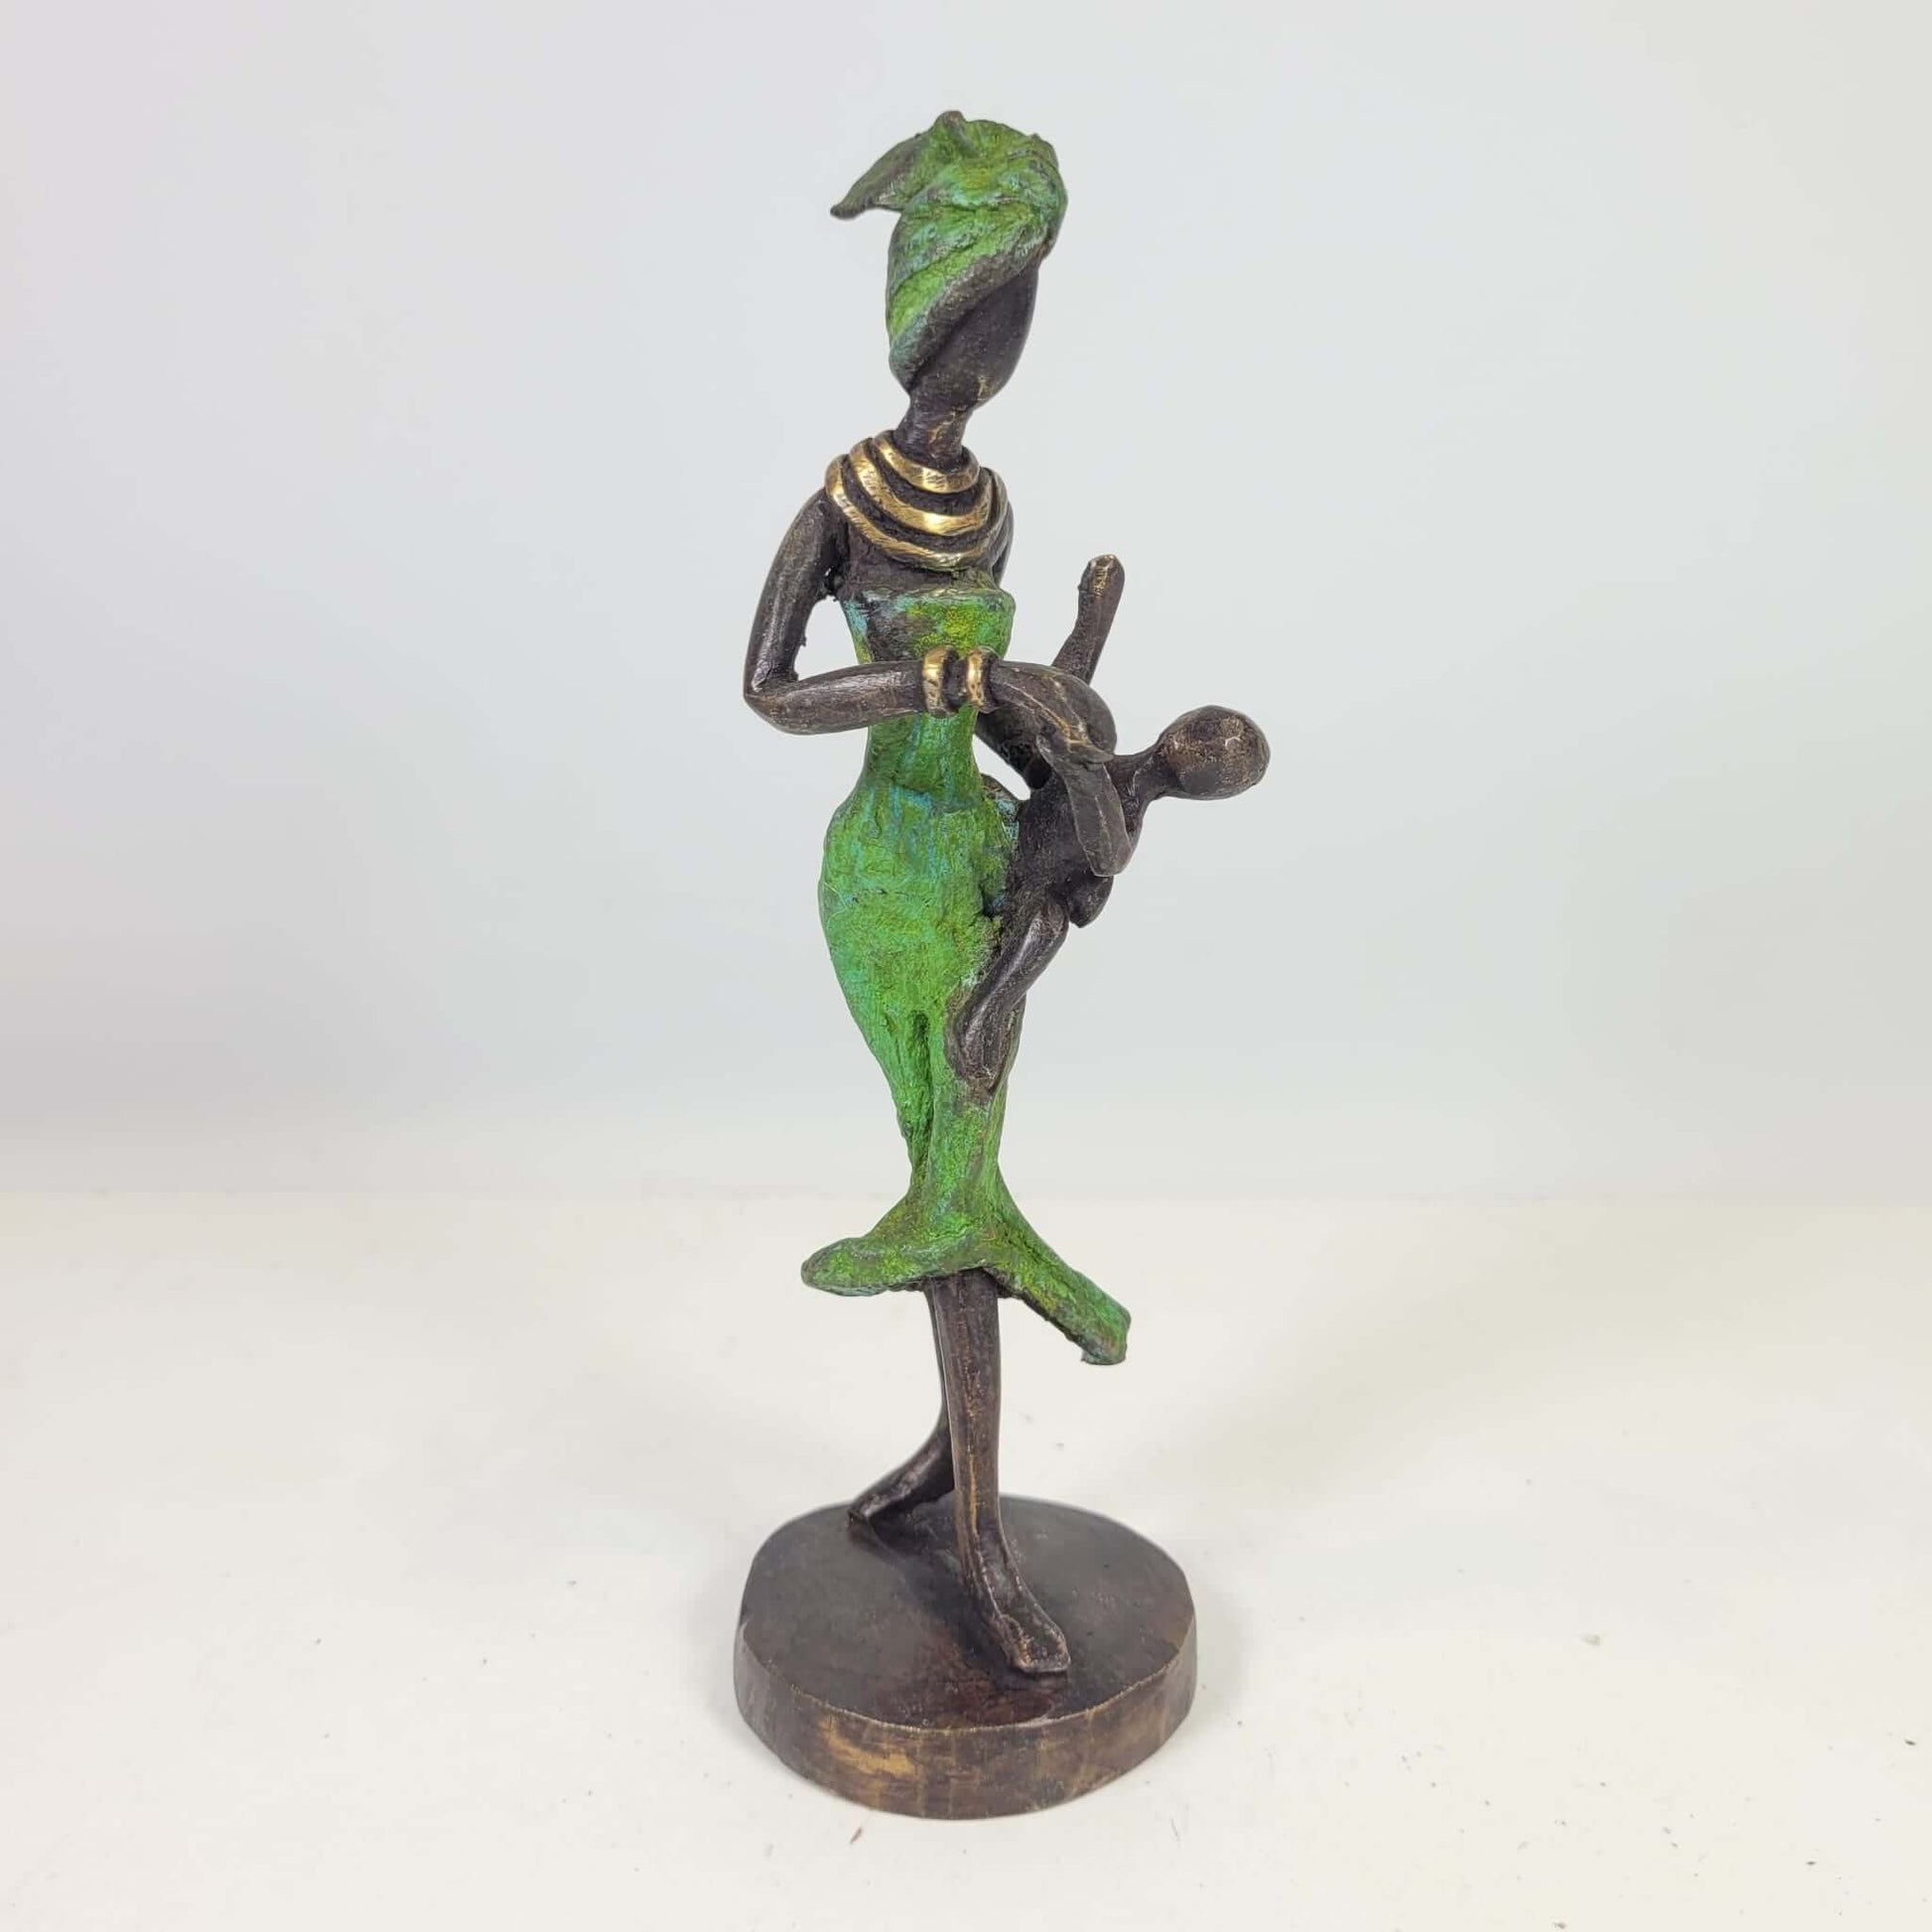 Bronze-Skulptur "Frau mit Kind" by Karim | 15 cm | verschiedene Farben